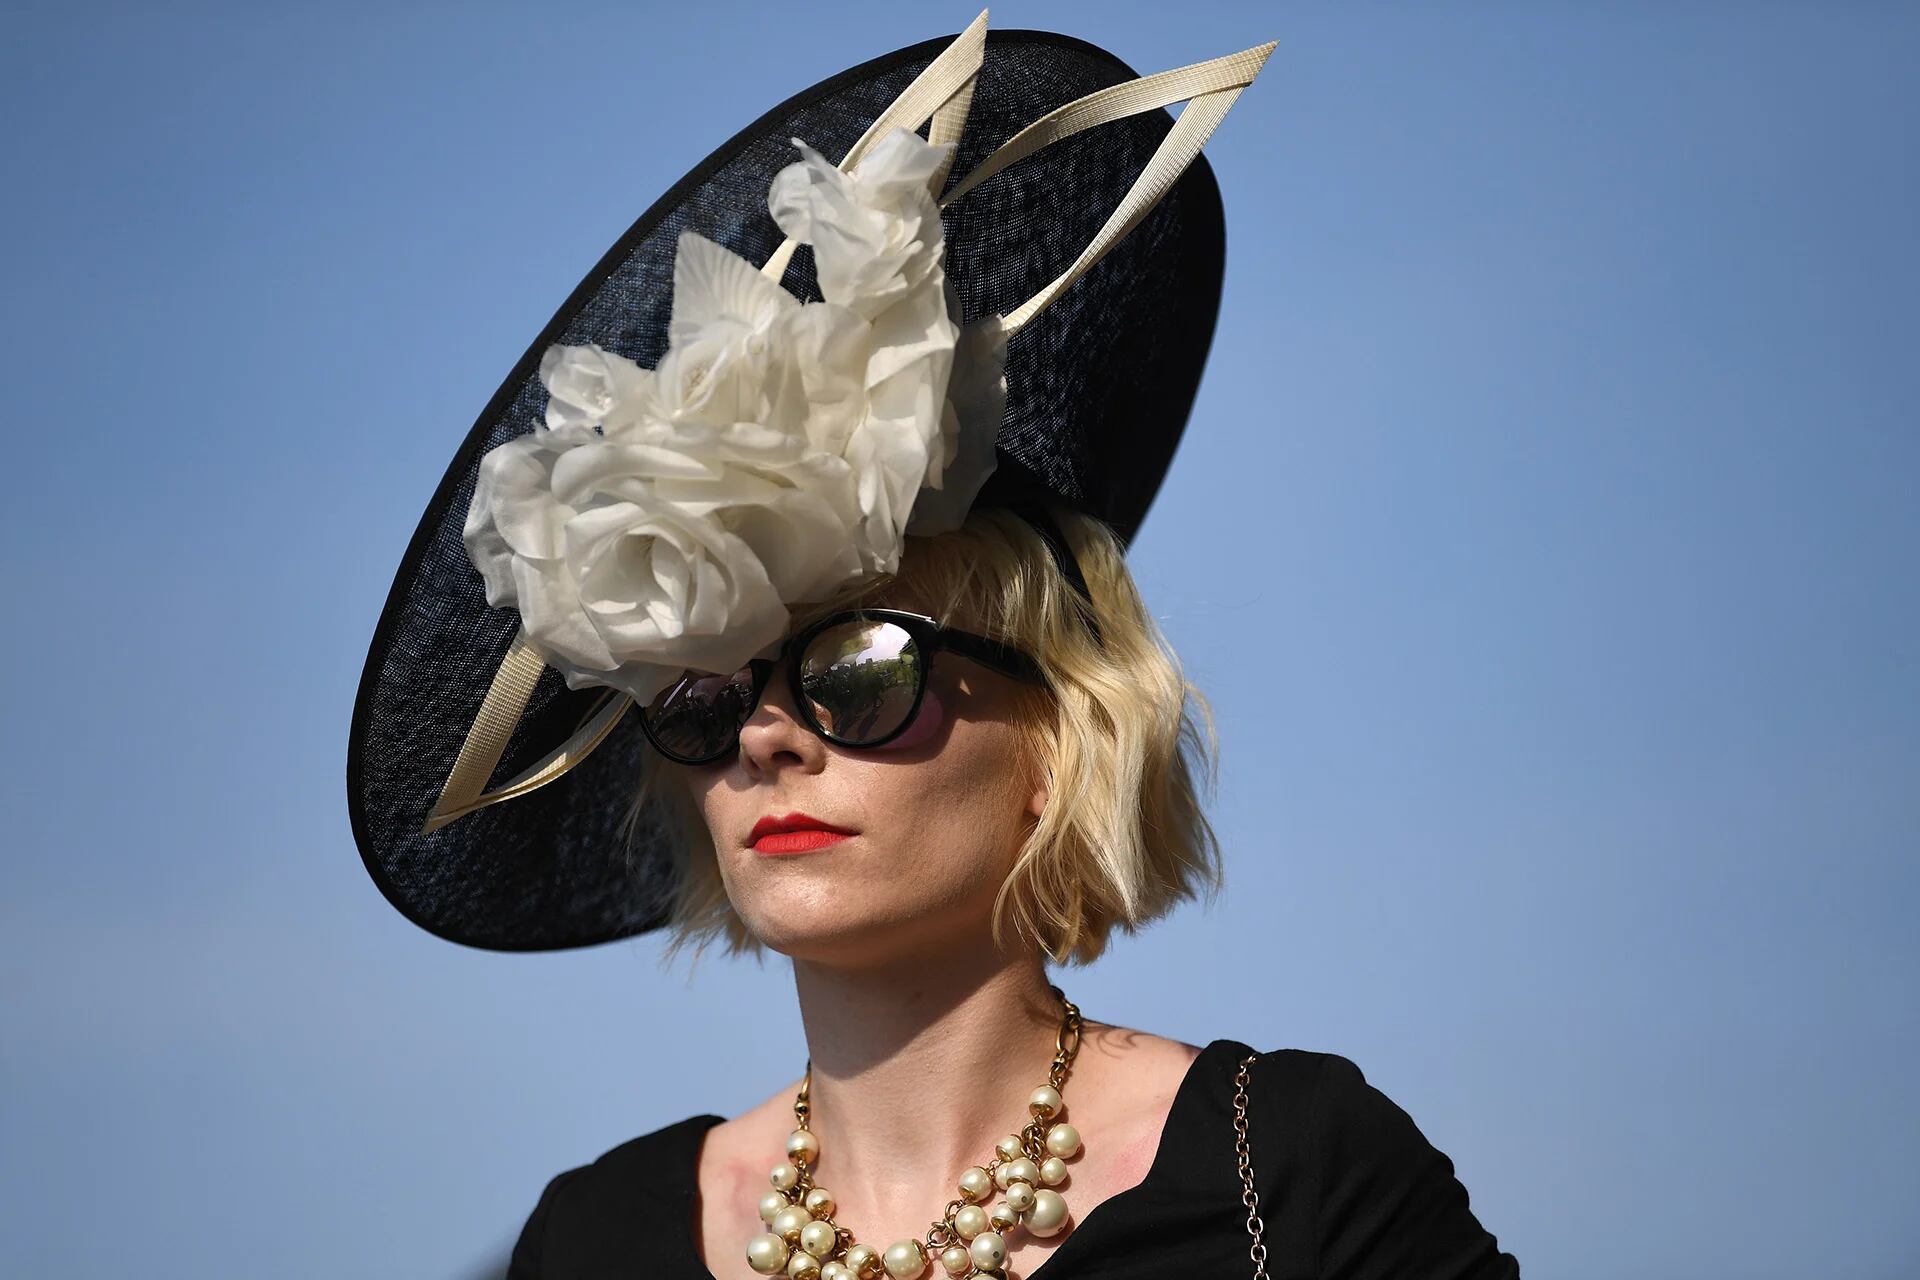 El dress code del evento exige sombreros, tocados o fascinators